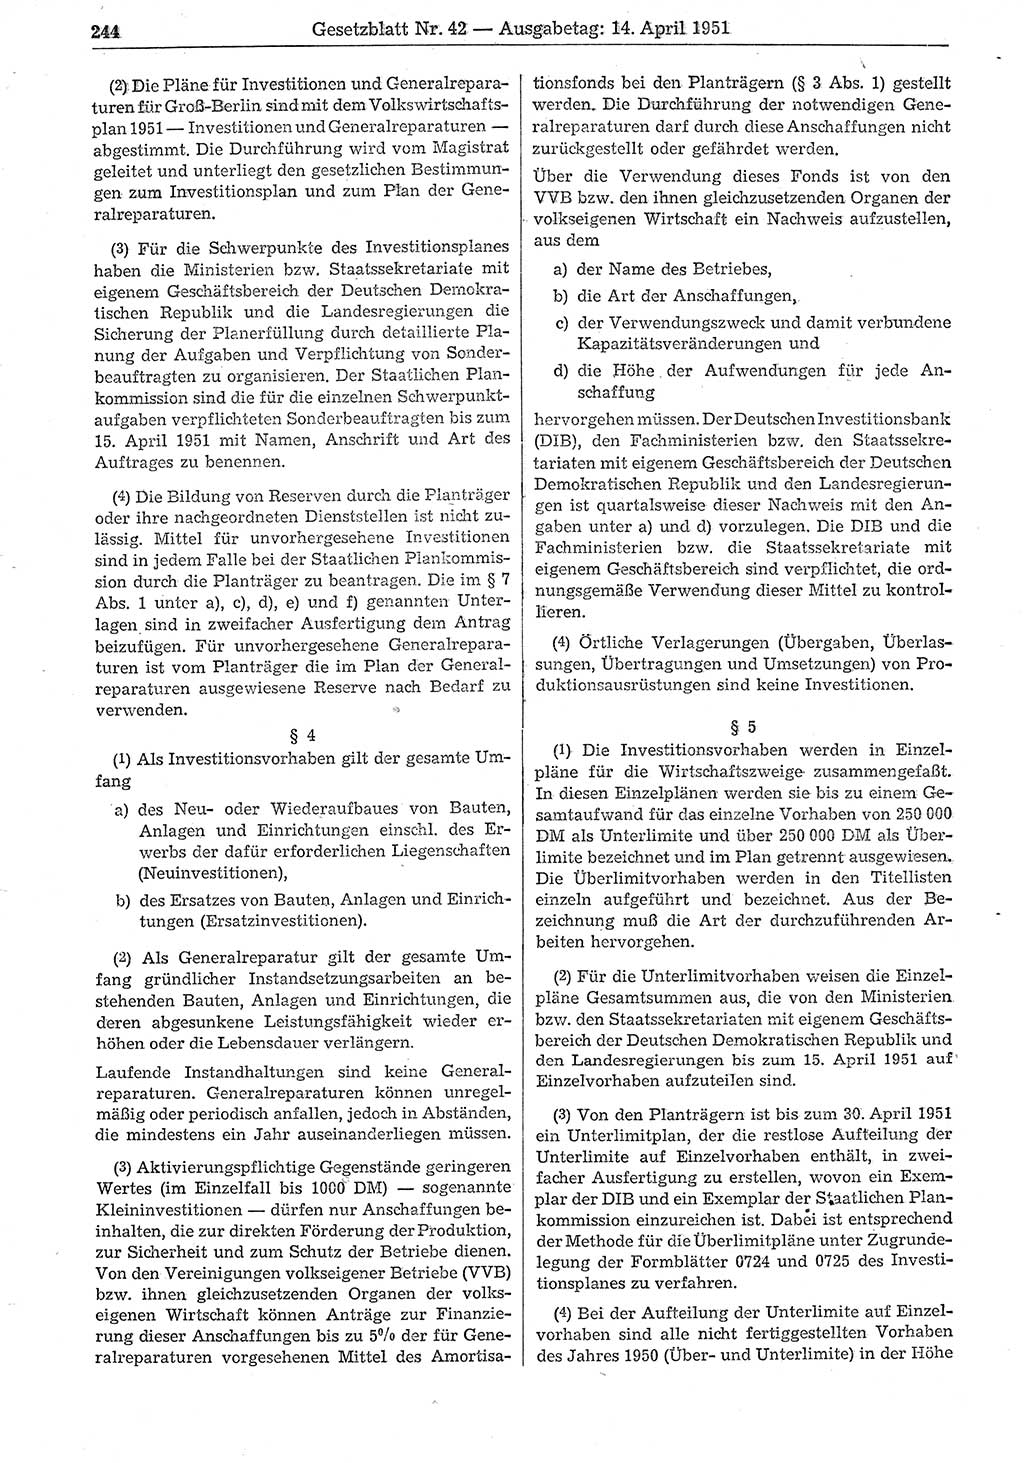 Gesetzblatt (GBl.) der Deutschen Demokratischen Republik (DDR) 1951, Seite 244 (GBl. DDR 1951, S. 244)